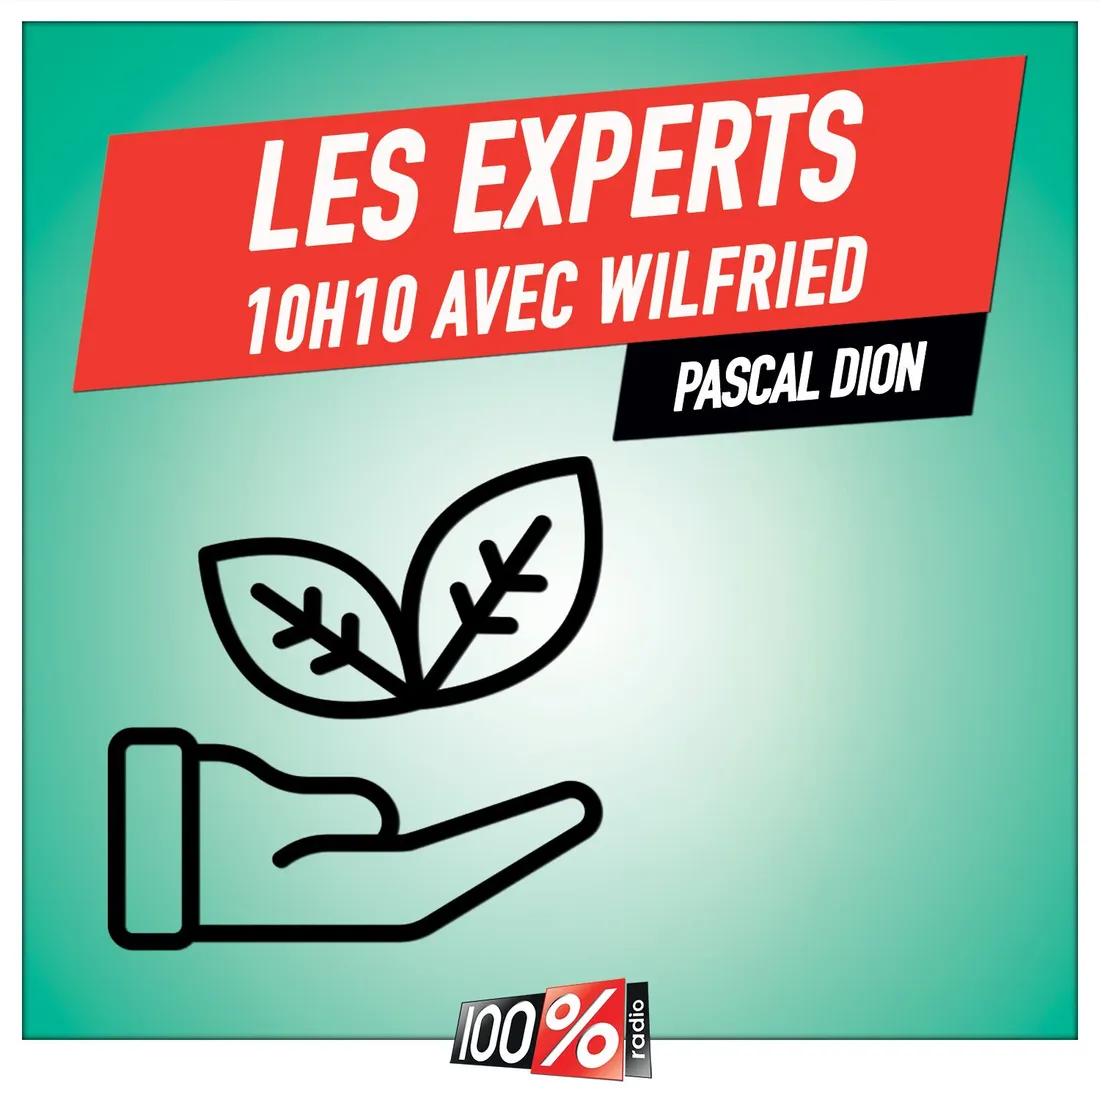 Les experts de Wilfried, Pascal Dion